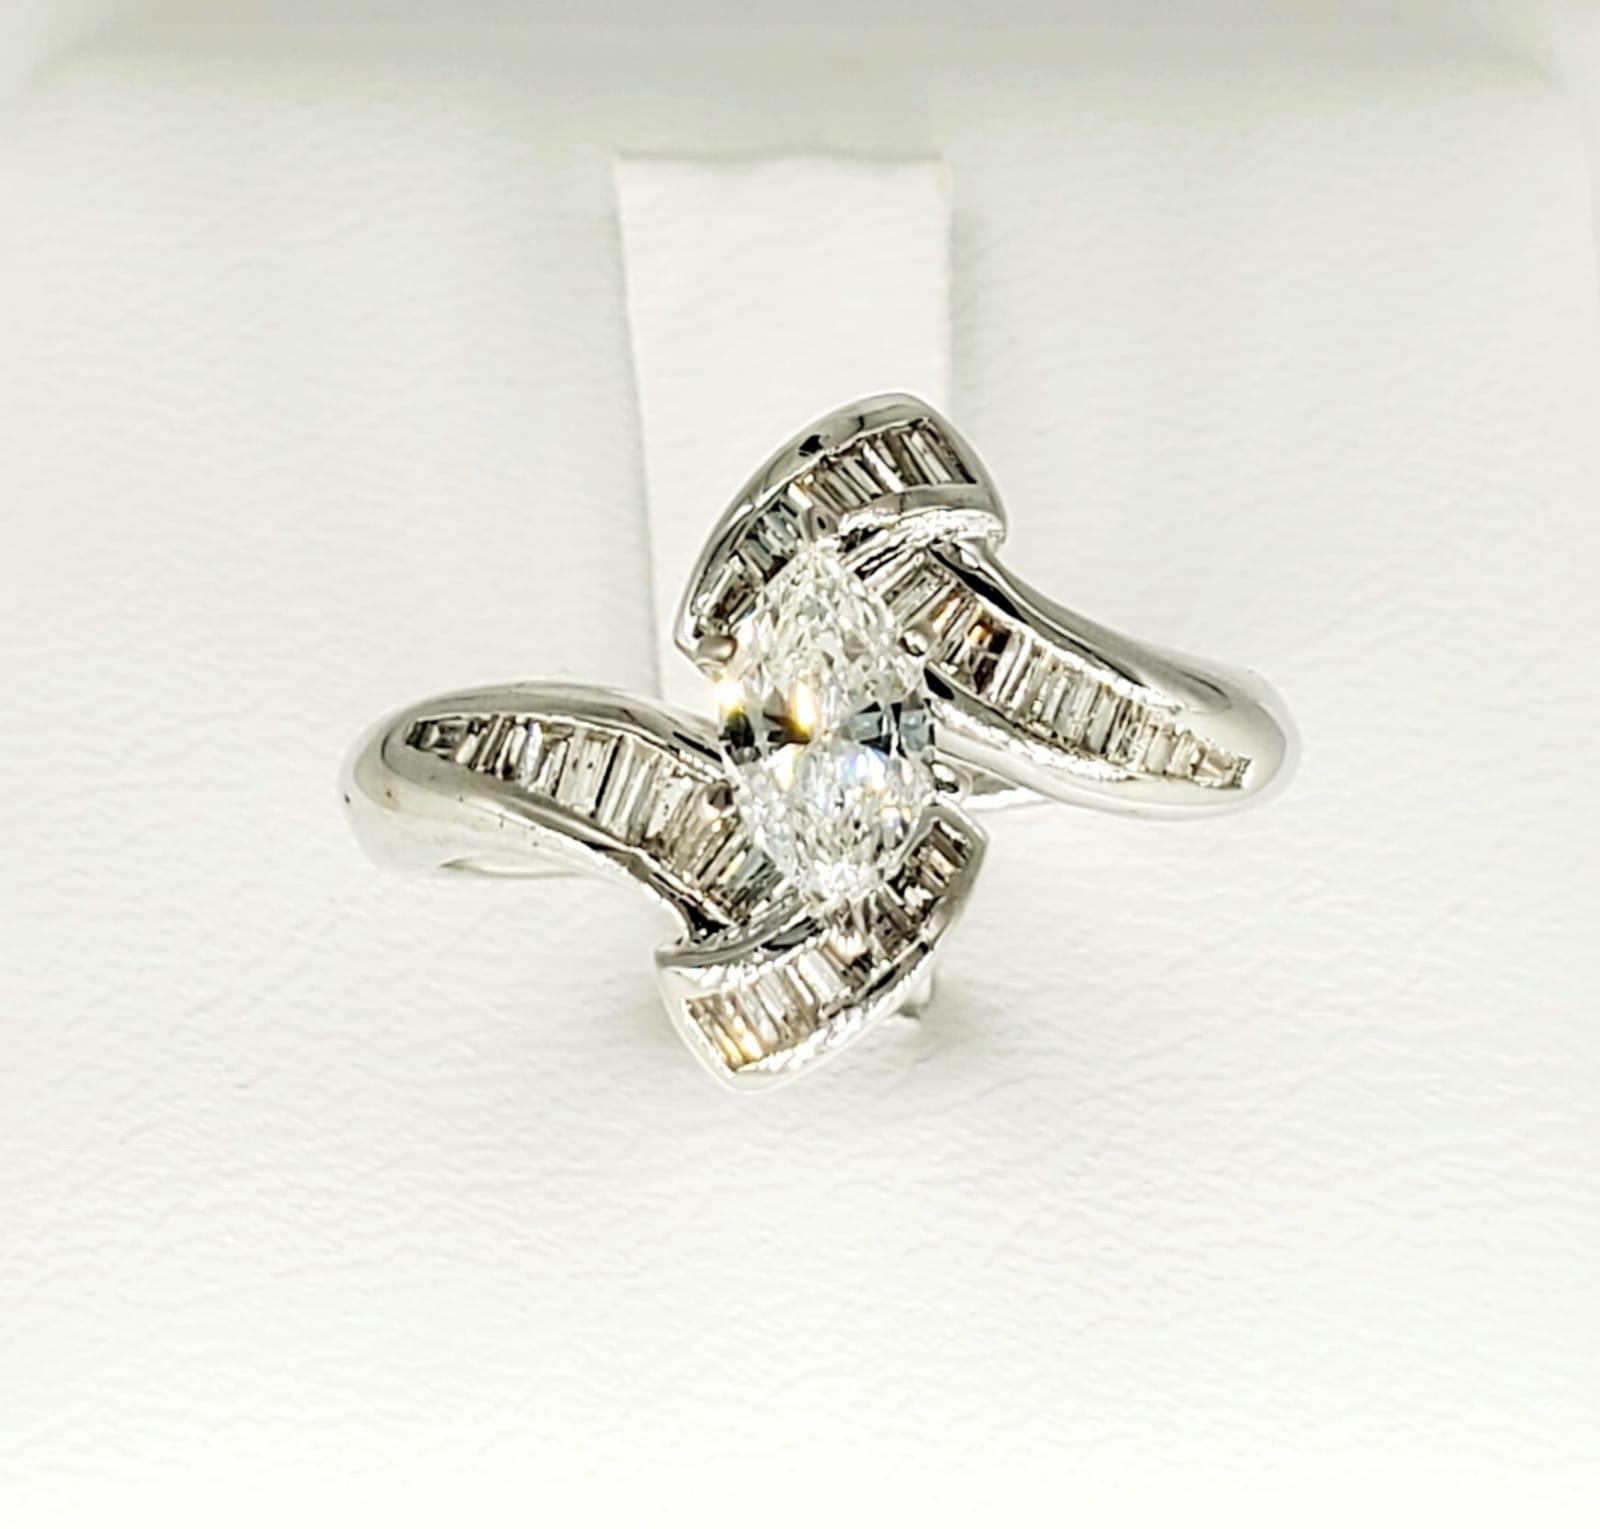 Vintage 2 Carat VS/I Marquise Diamonds Swivel Engagement Ring. Le diamant central marquise pèse environ 0,60 carat et est de pureté VS/I. Les diamants baguettes coniques qui l'entourent pèsent environ 1,40 carat. Le magnifique design pivotant est un